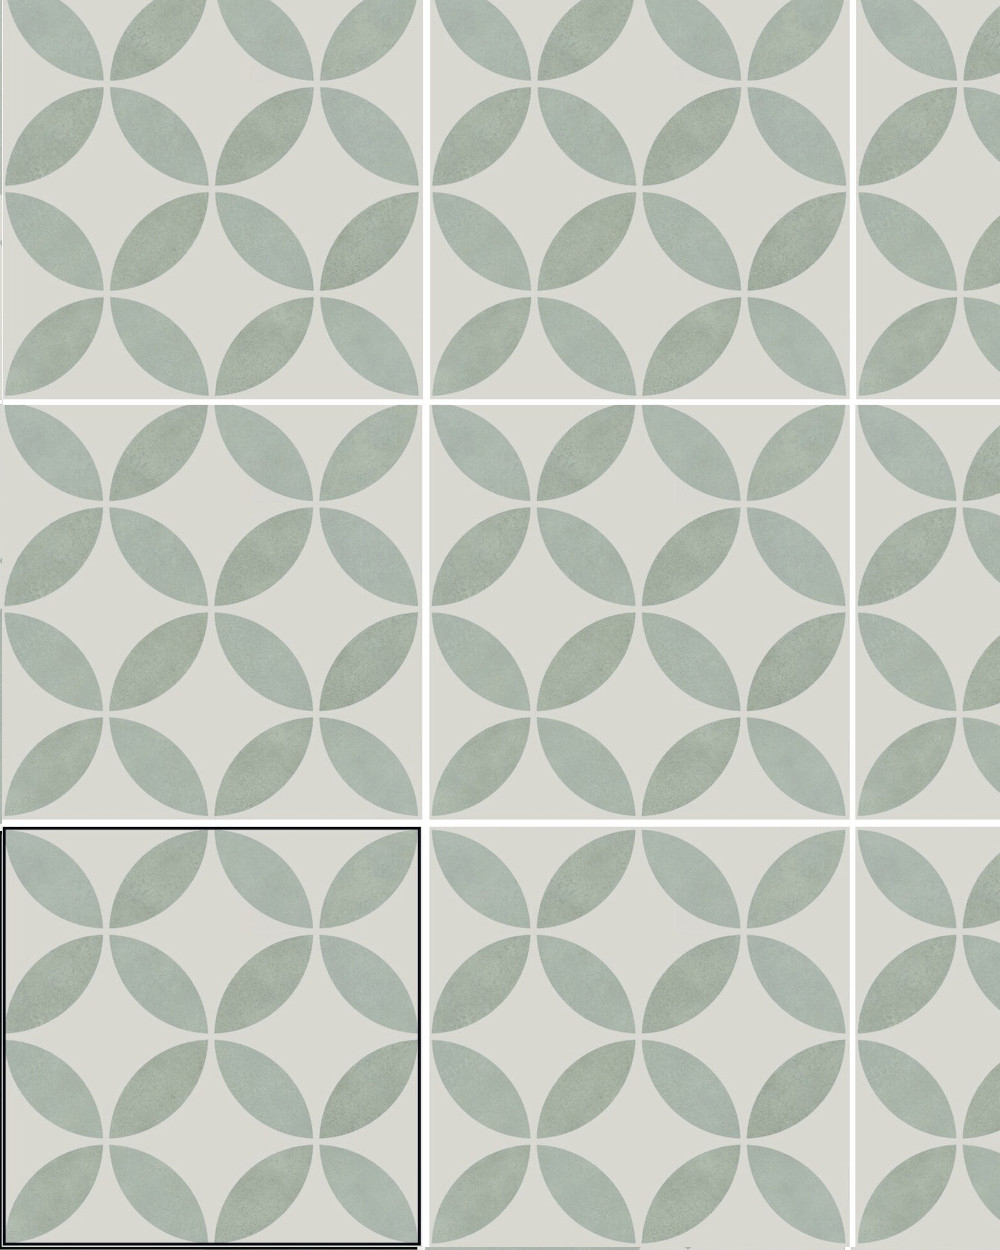 Motif tiles with floral pattern Green White | ENYA AQUA 15X15 cm